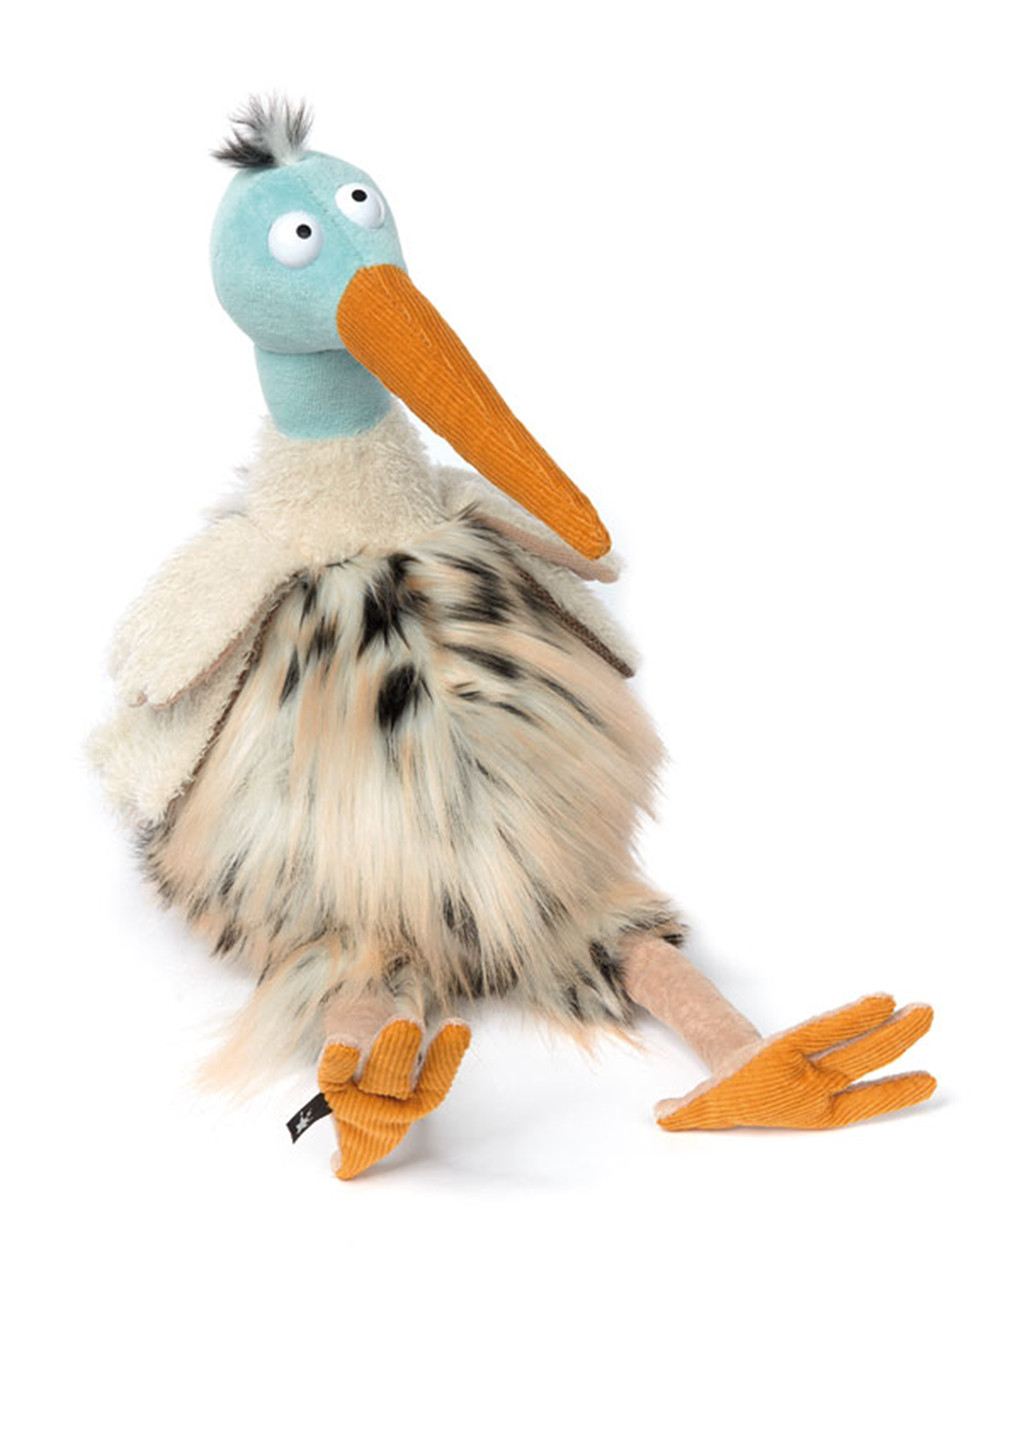 Мягкая игрушка Райская птица Пол, 15х14х30 см Sigikid (186242938)